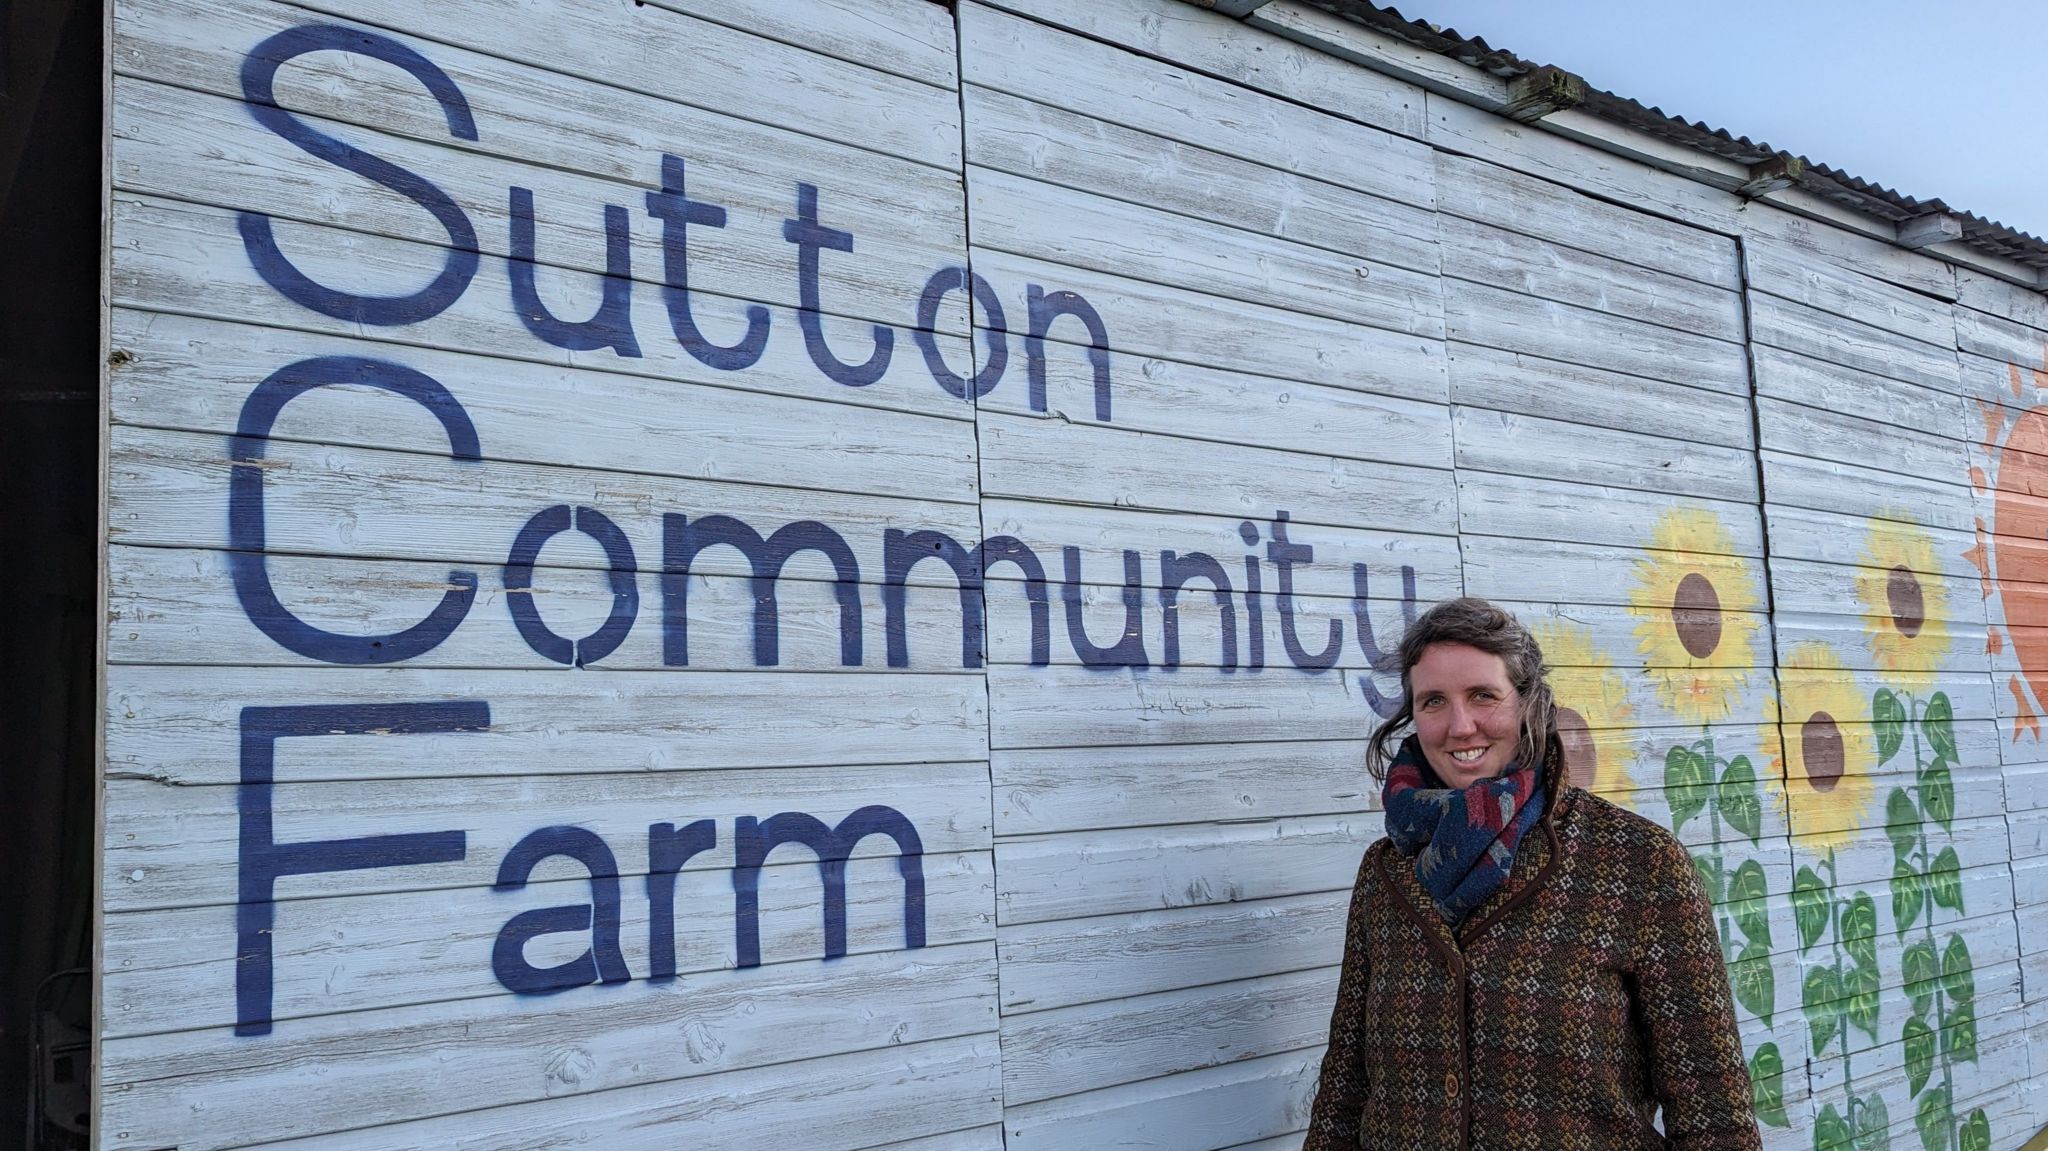 Sutton Community Farm mural 